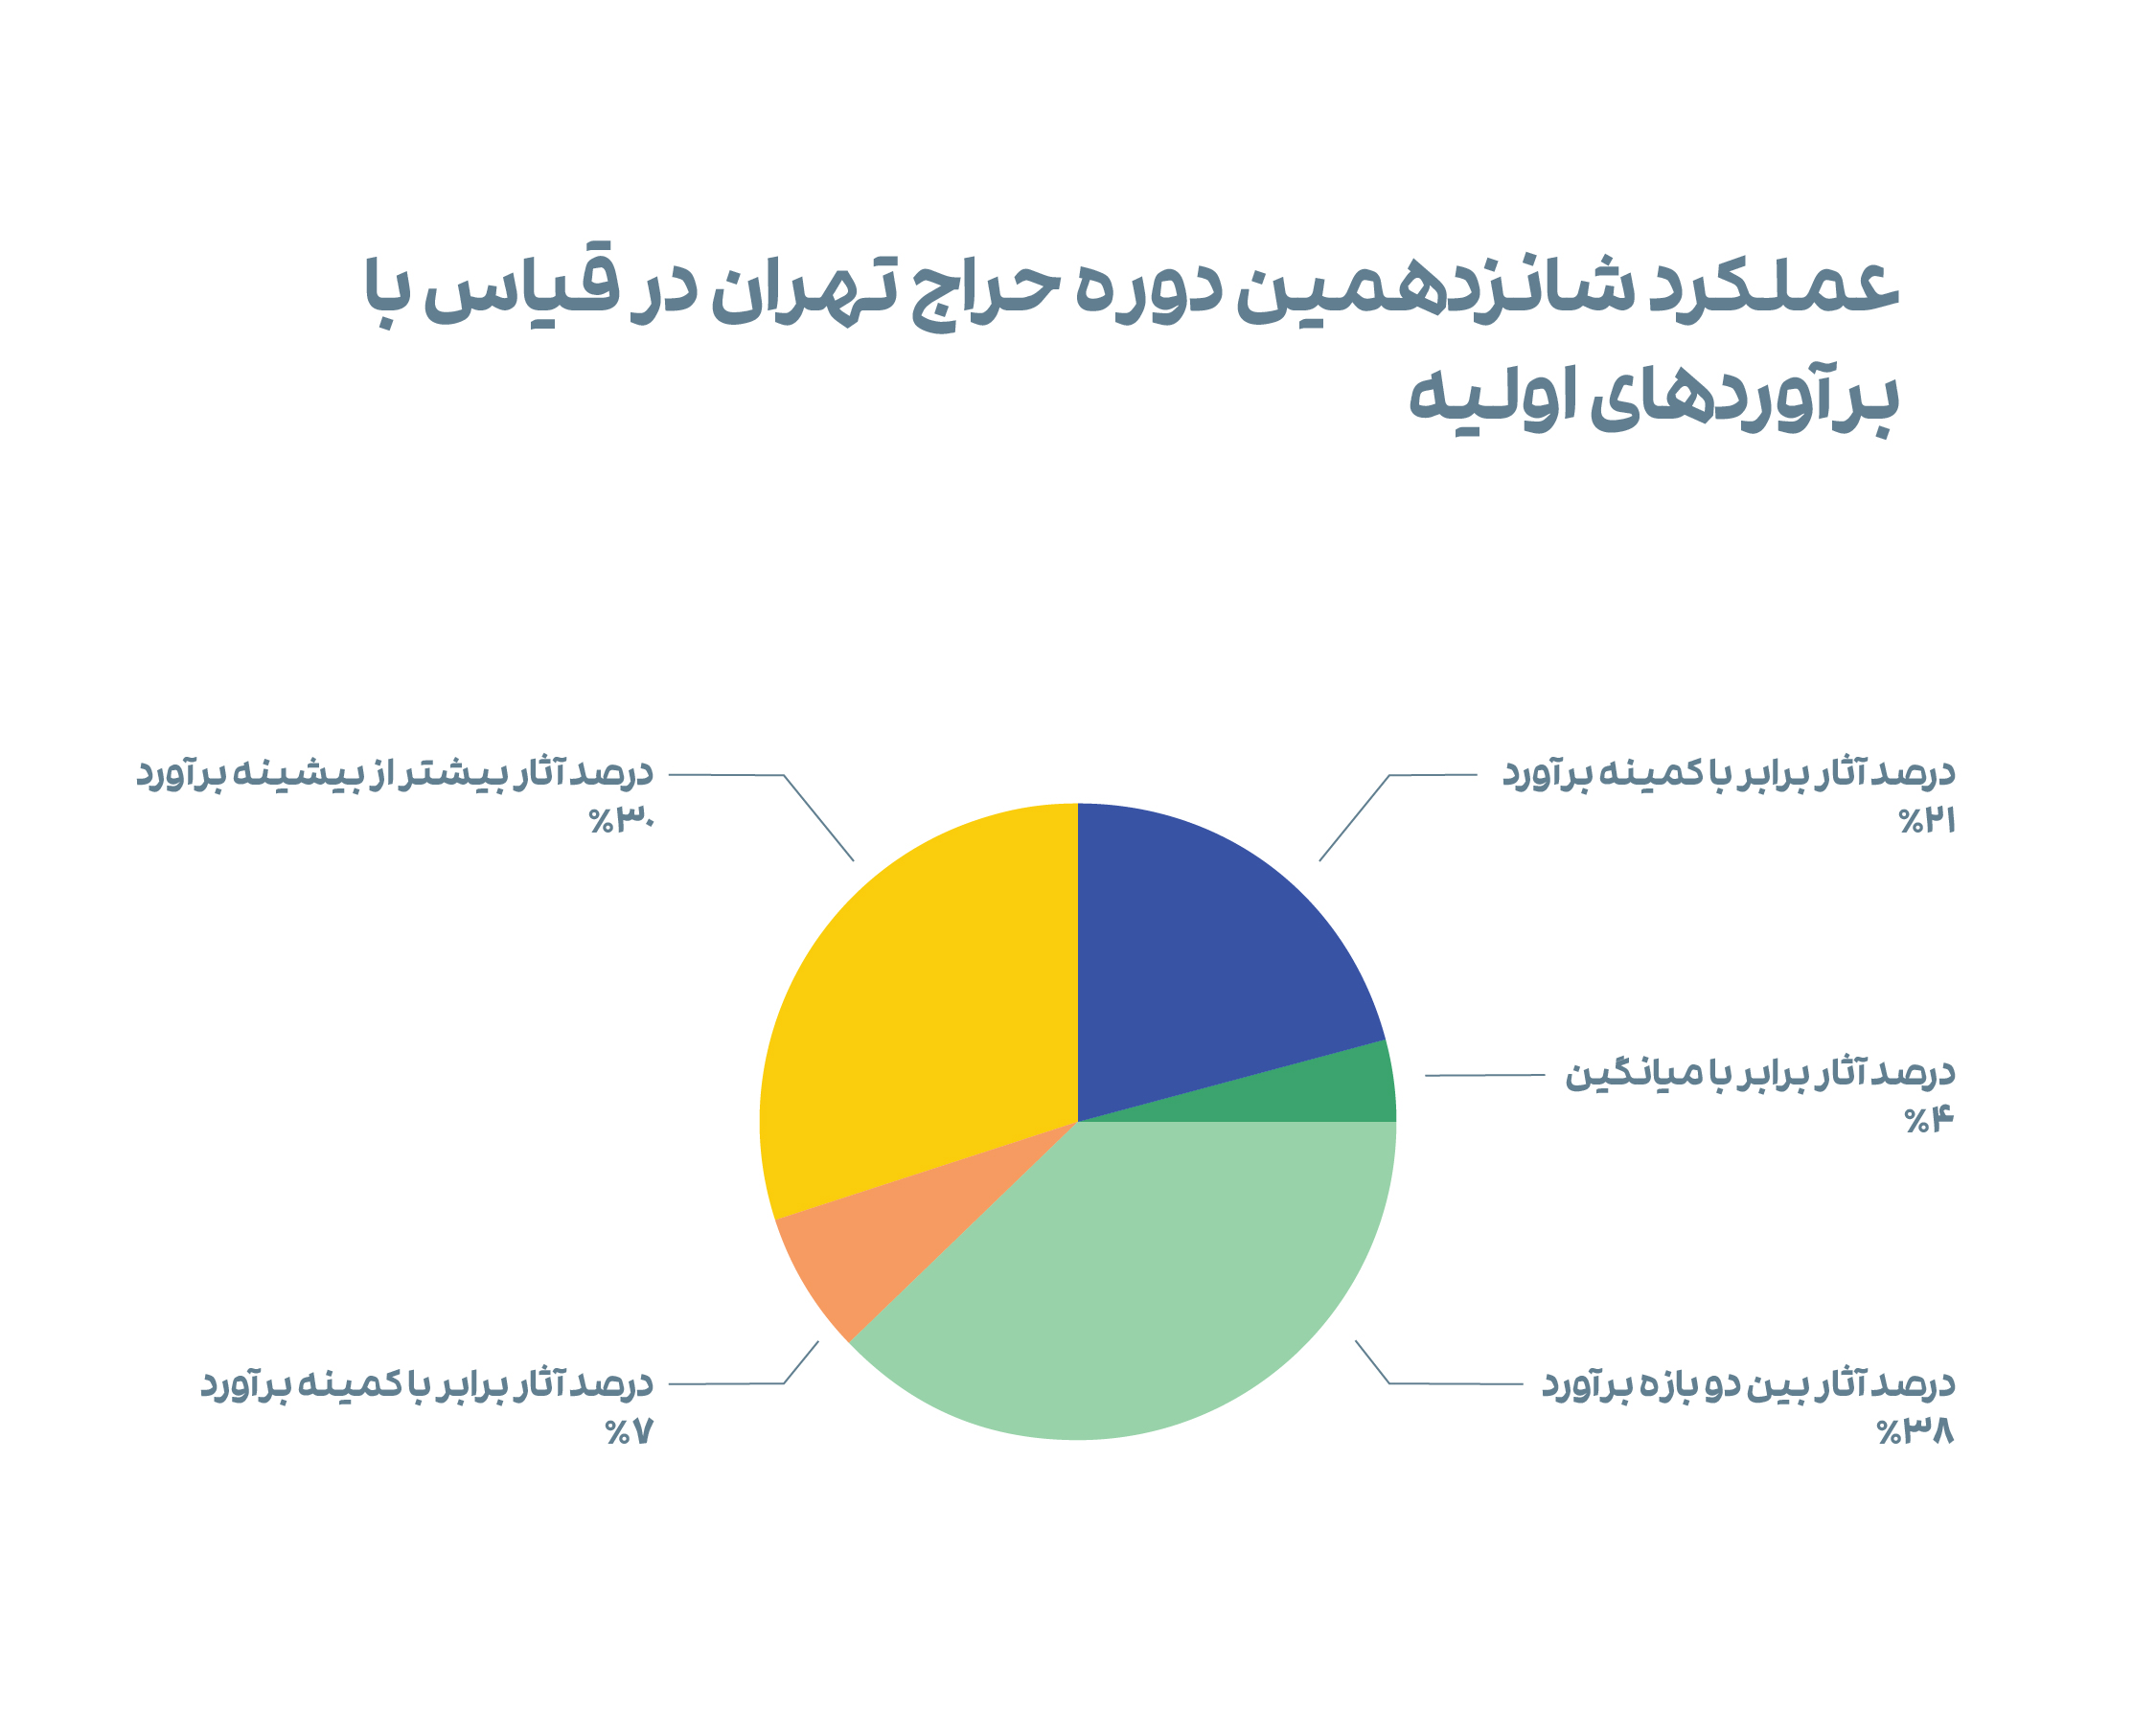 نمودار 6. عملکرد شانزدهمین دوره از حراج تهران در قیاس با برآوردهای اولیه.